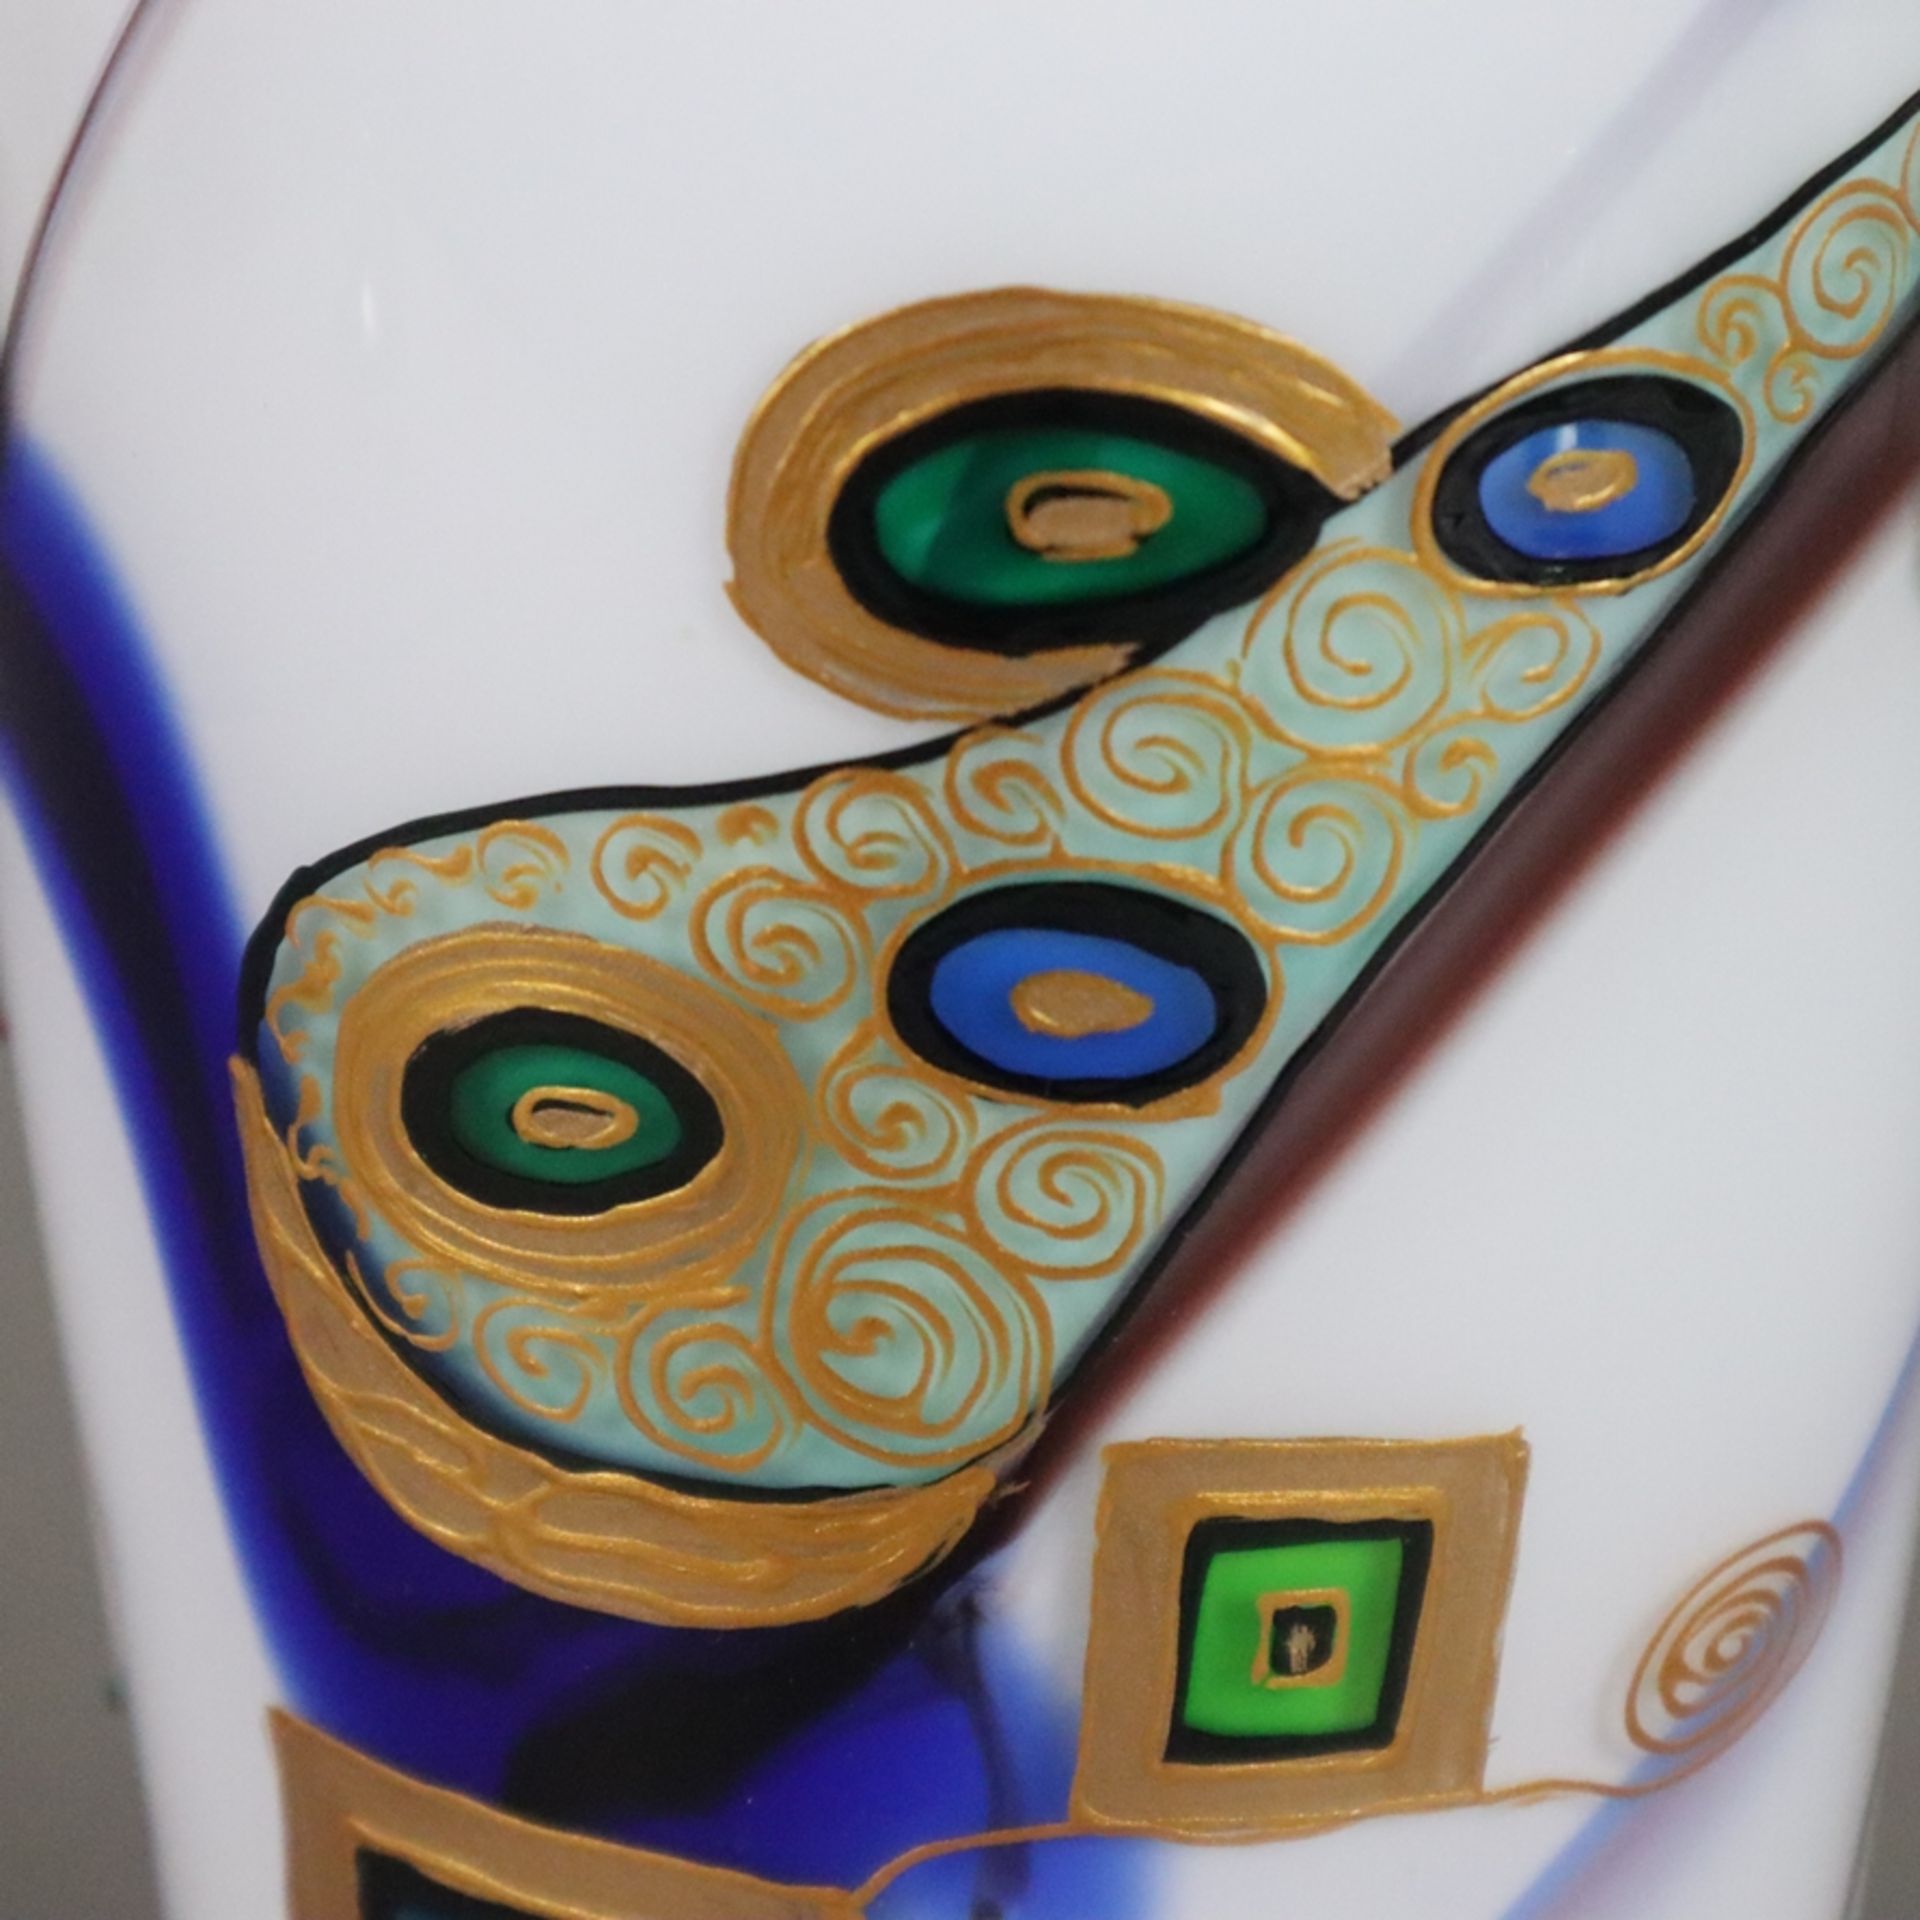 Glasvase mit Klimt-Motiven - nach unten konisch zulaufende Schultervase mit leicht ausgestellter Mü - Bild 3 aus 13